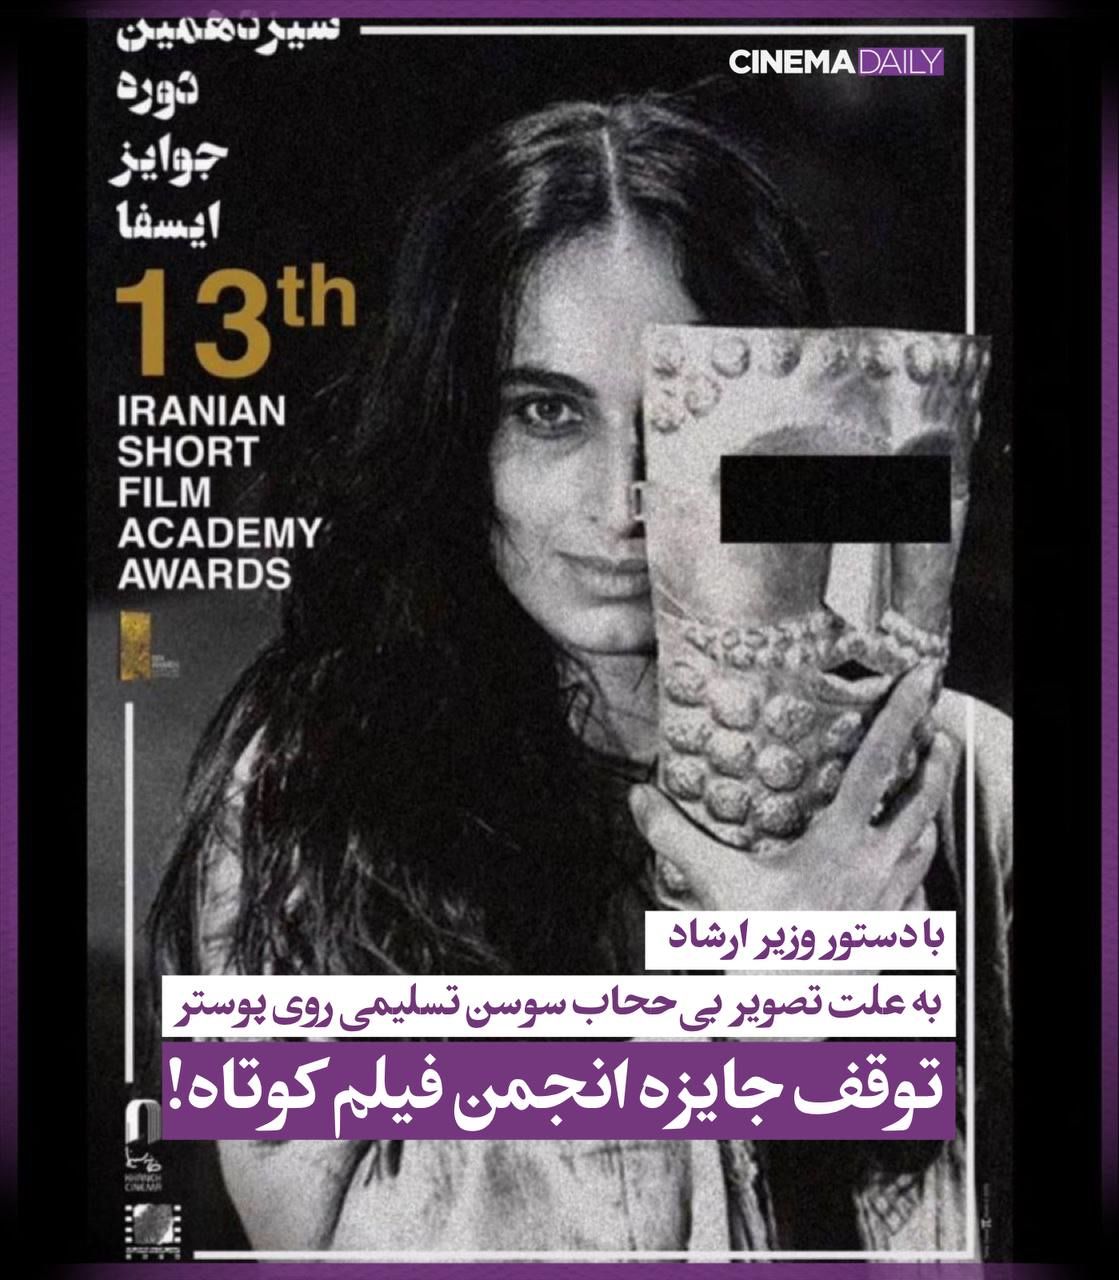 عکس سوسن تسلیمی در تهران جنجالی شد + عکس